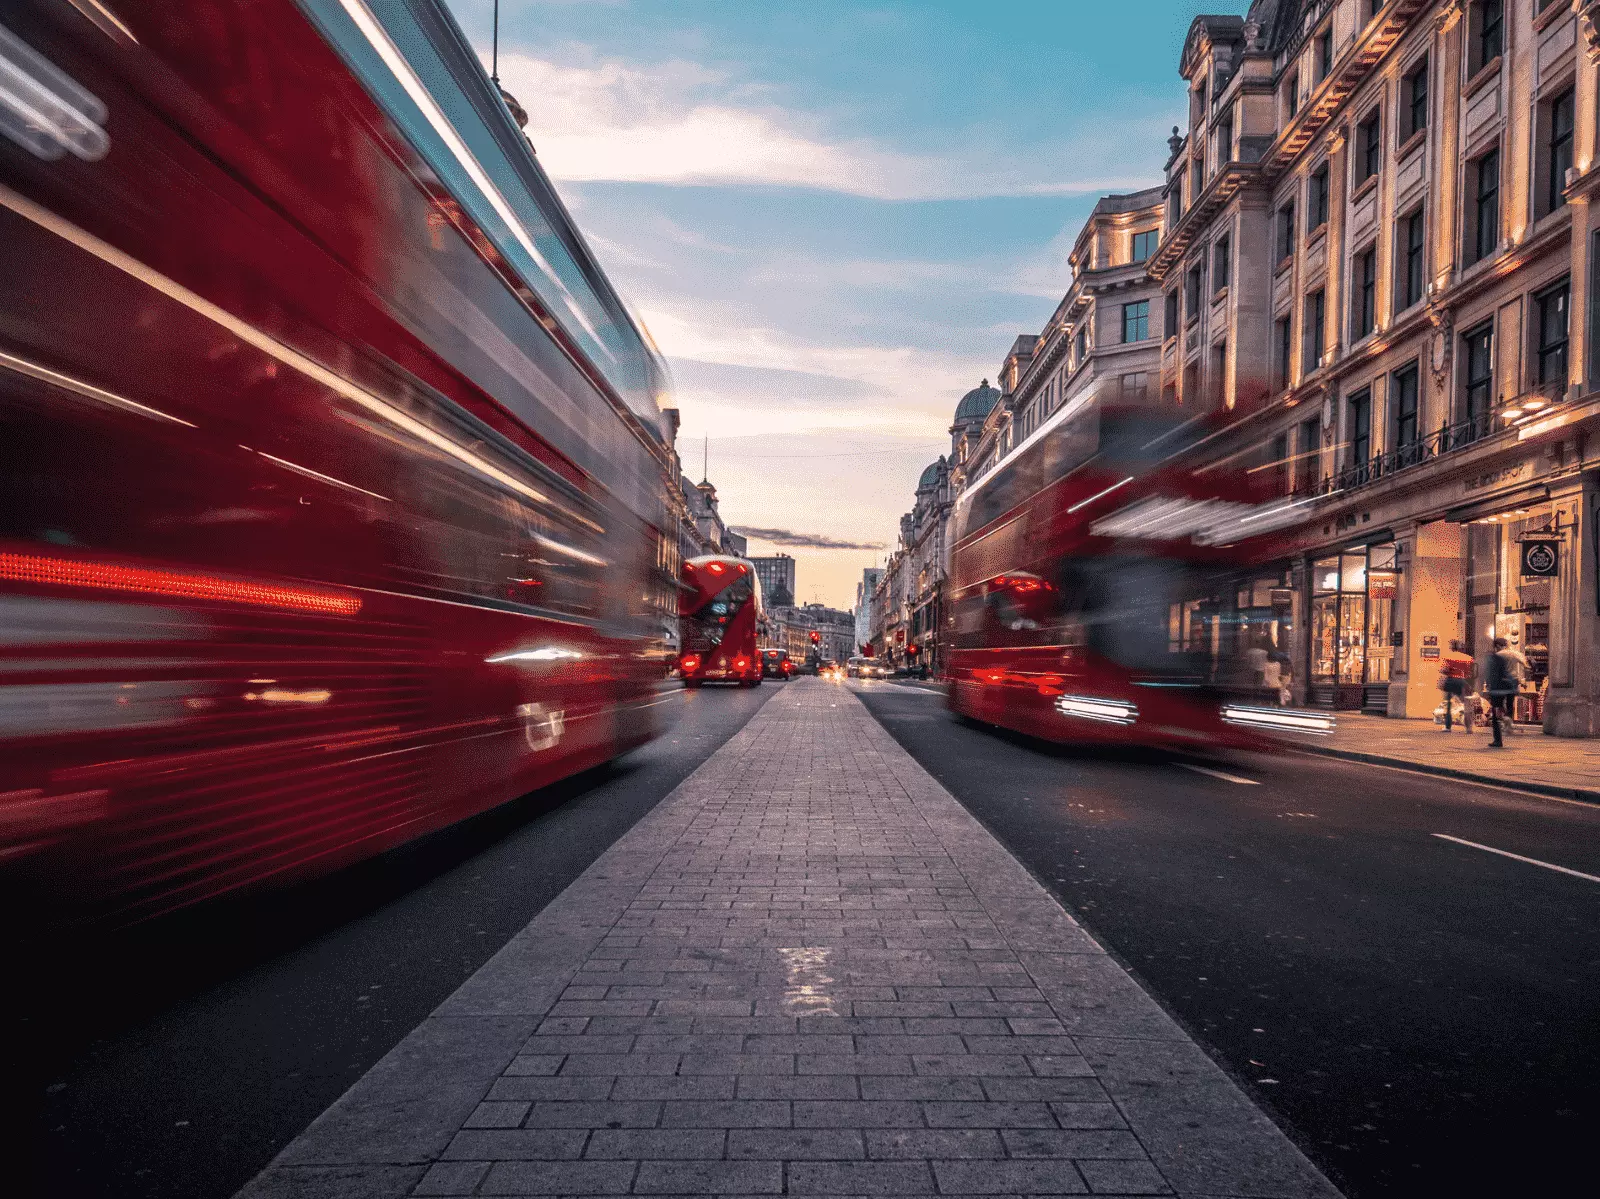 Londra şehri ve kırmızı otobüsler